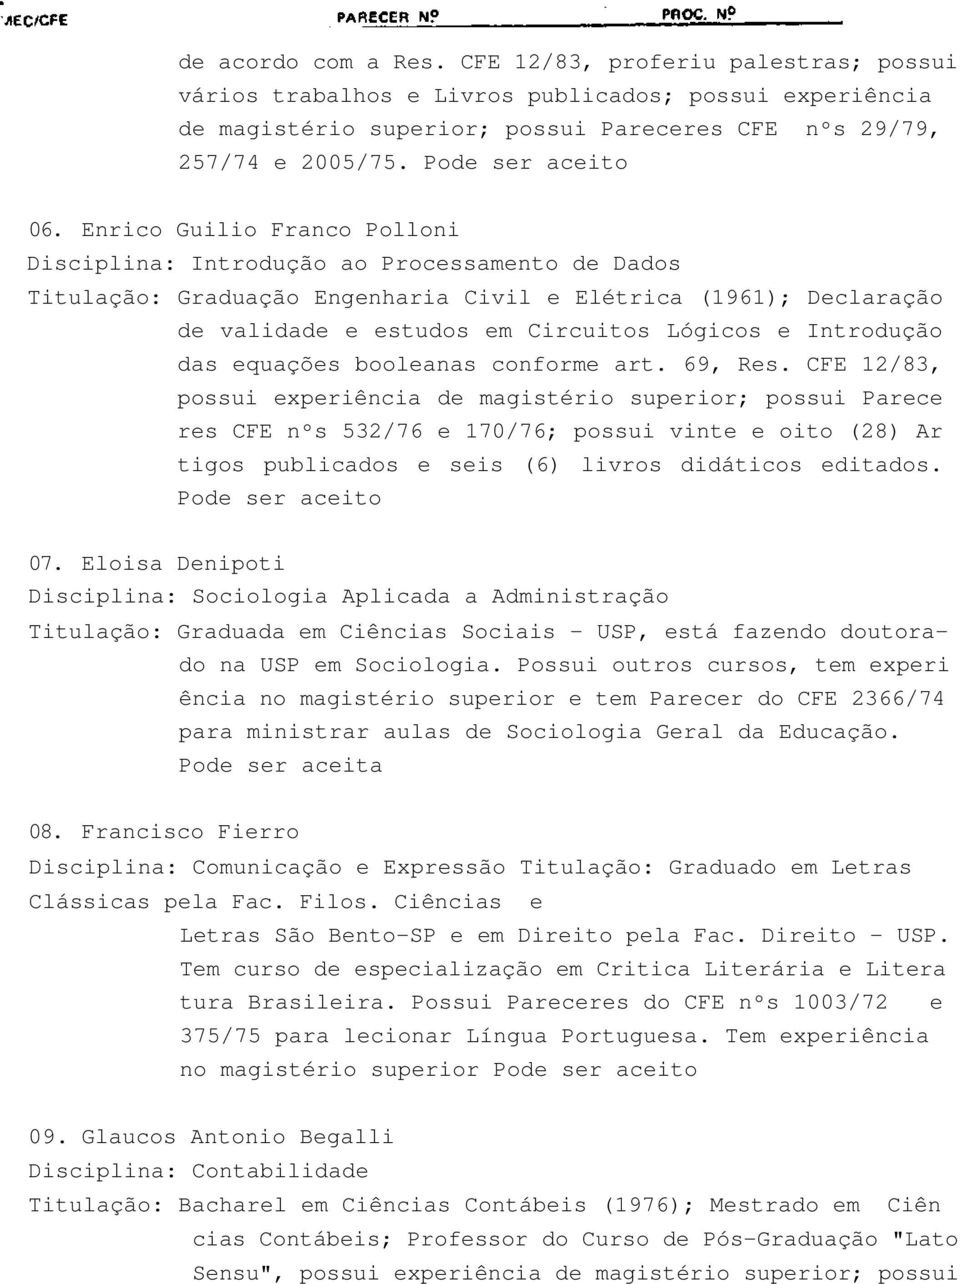 Enrico Guilio Franco Polloni Disciplina: Introdução ao Processamento de Dados Titulação: Graduação Engenharia Civil e Elétrica (191); Declaração de validade e estudos em Circuitos Lógicos e